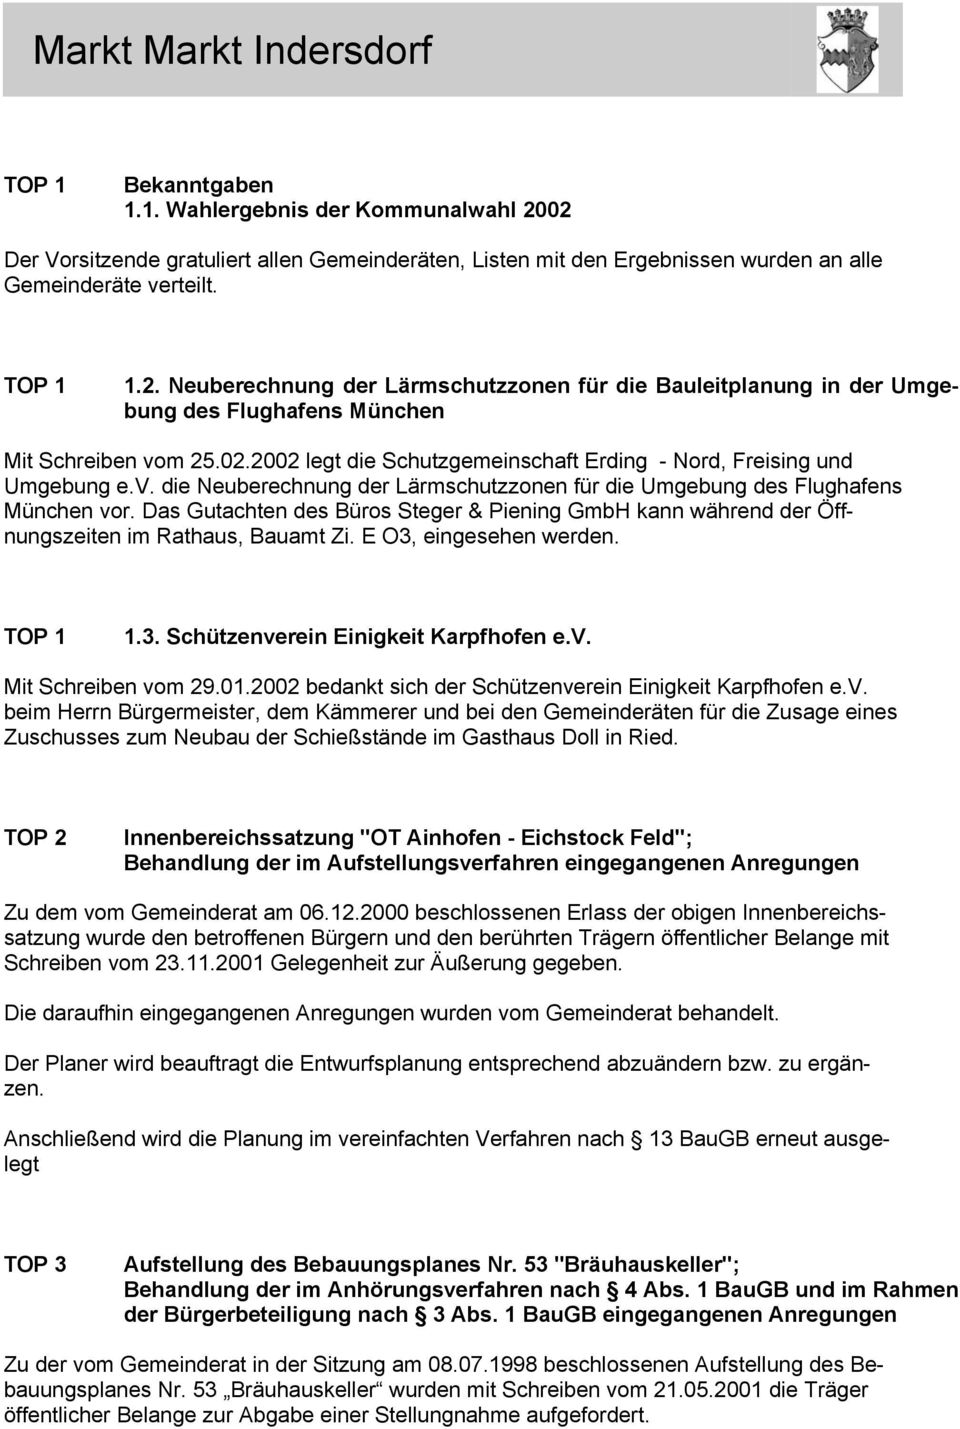 Das Gutachten des Büros Steger & Piening GmbH kann während der Öffnungszeiten im Rathaus, Bauamt Zi. E O3, eingesehen werden. 1.3. Schützenverein Einigkeit Karpfhofen e.v. Mit Schreiben vom 29.01.